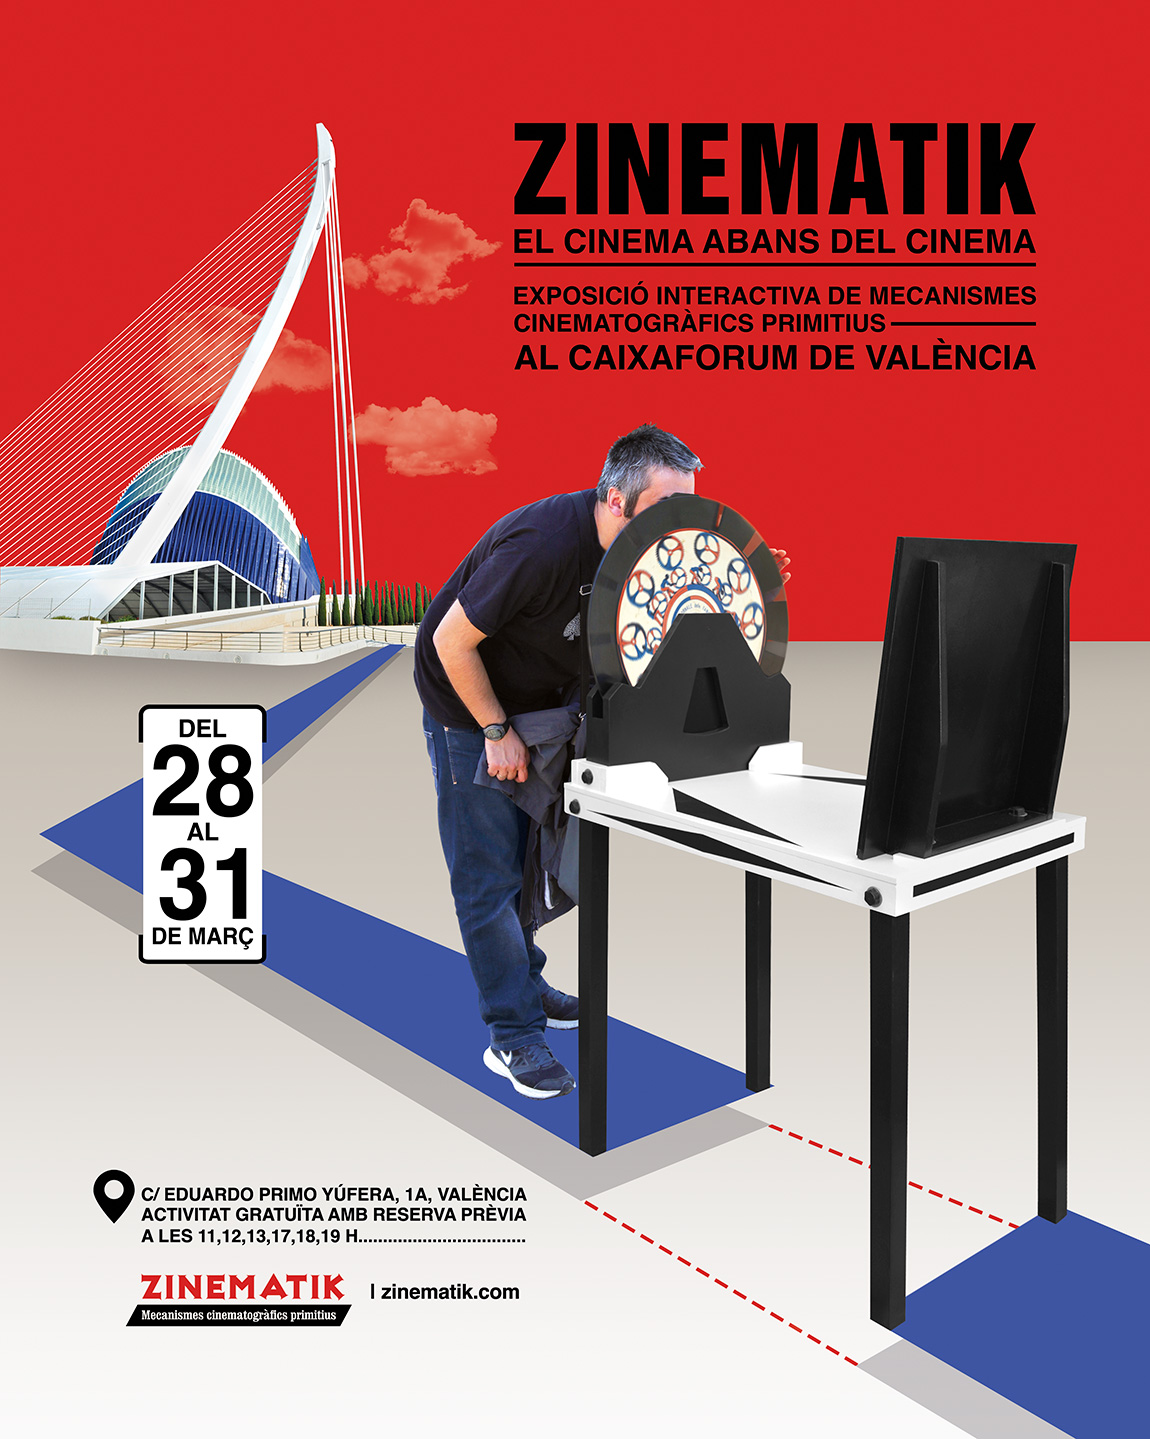 Zinematik en el CaixaForum de Valencia.
Exposición interactiva de mecanismos cinematográficos primitivos. Del 28 al 31 de marzo de 2024